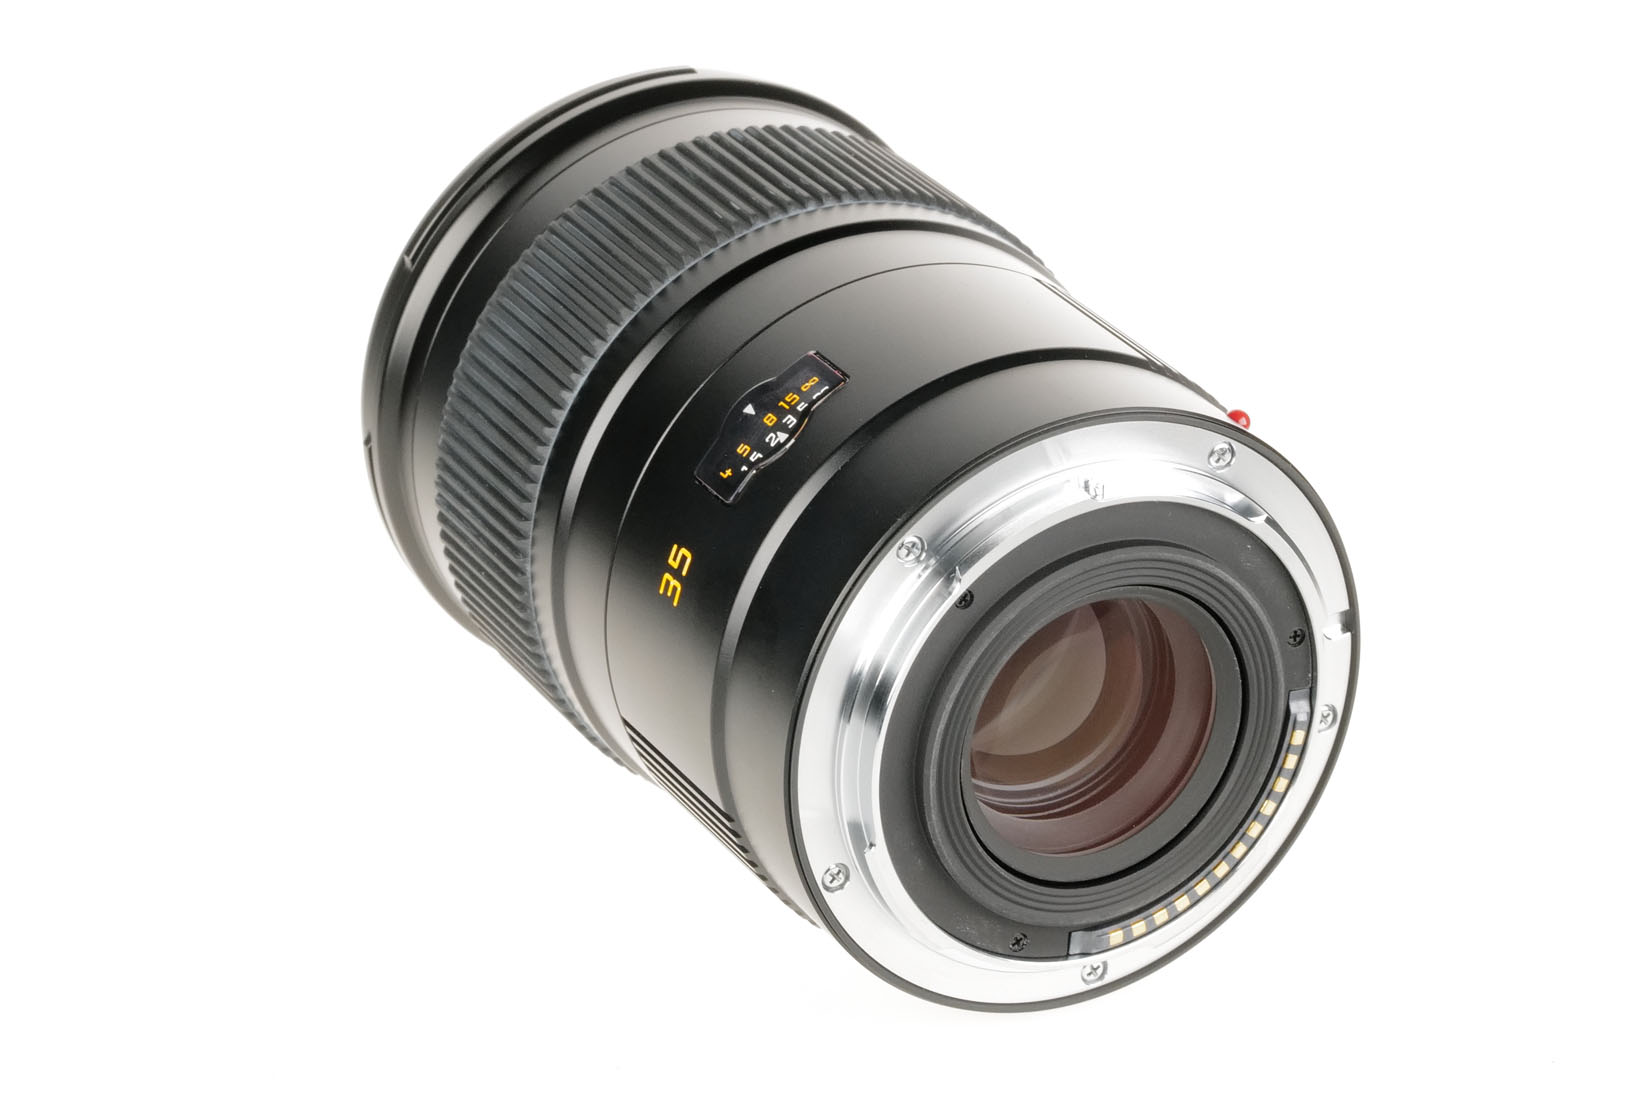 Leica SUMMARIT-S 1:2.5/35mm ASPH. 11064